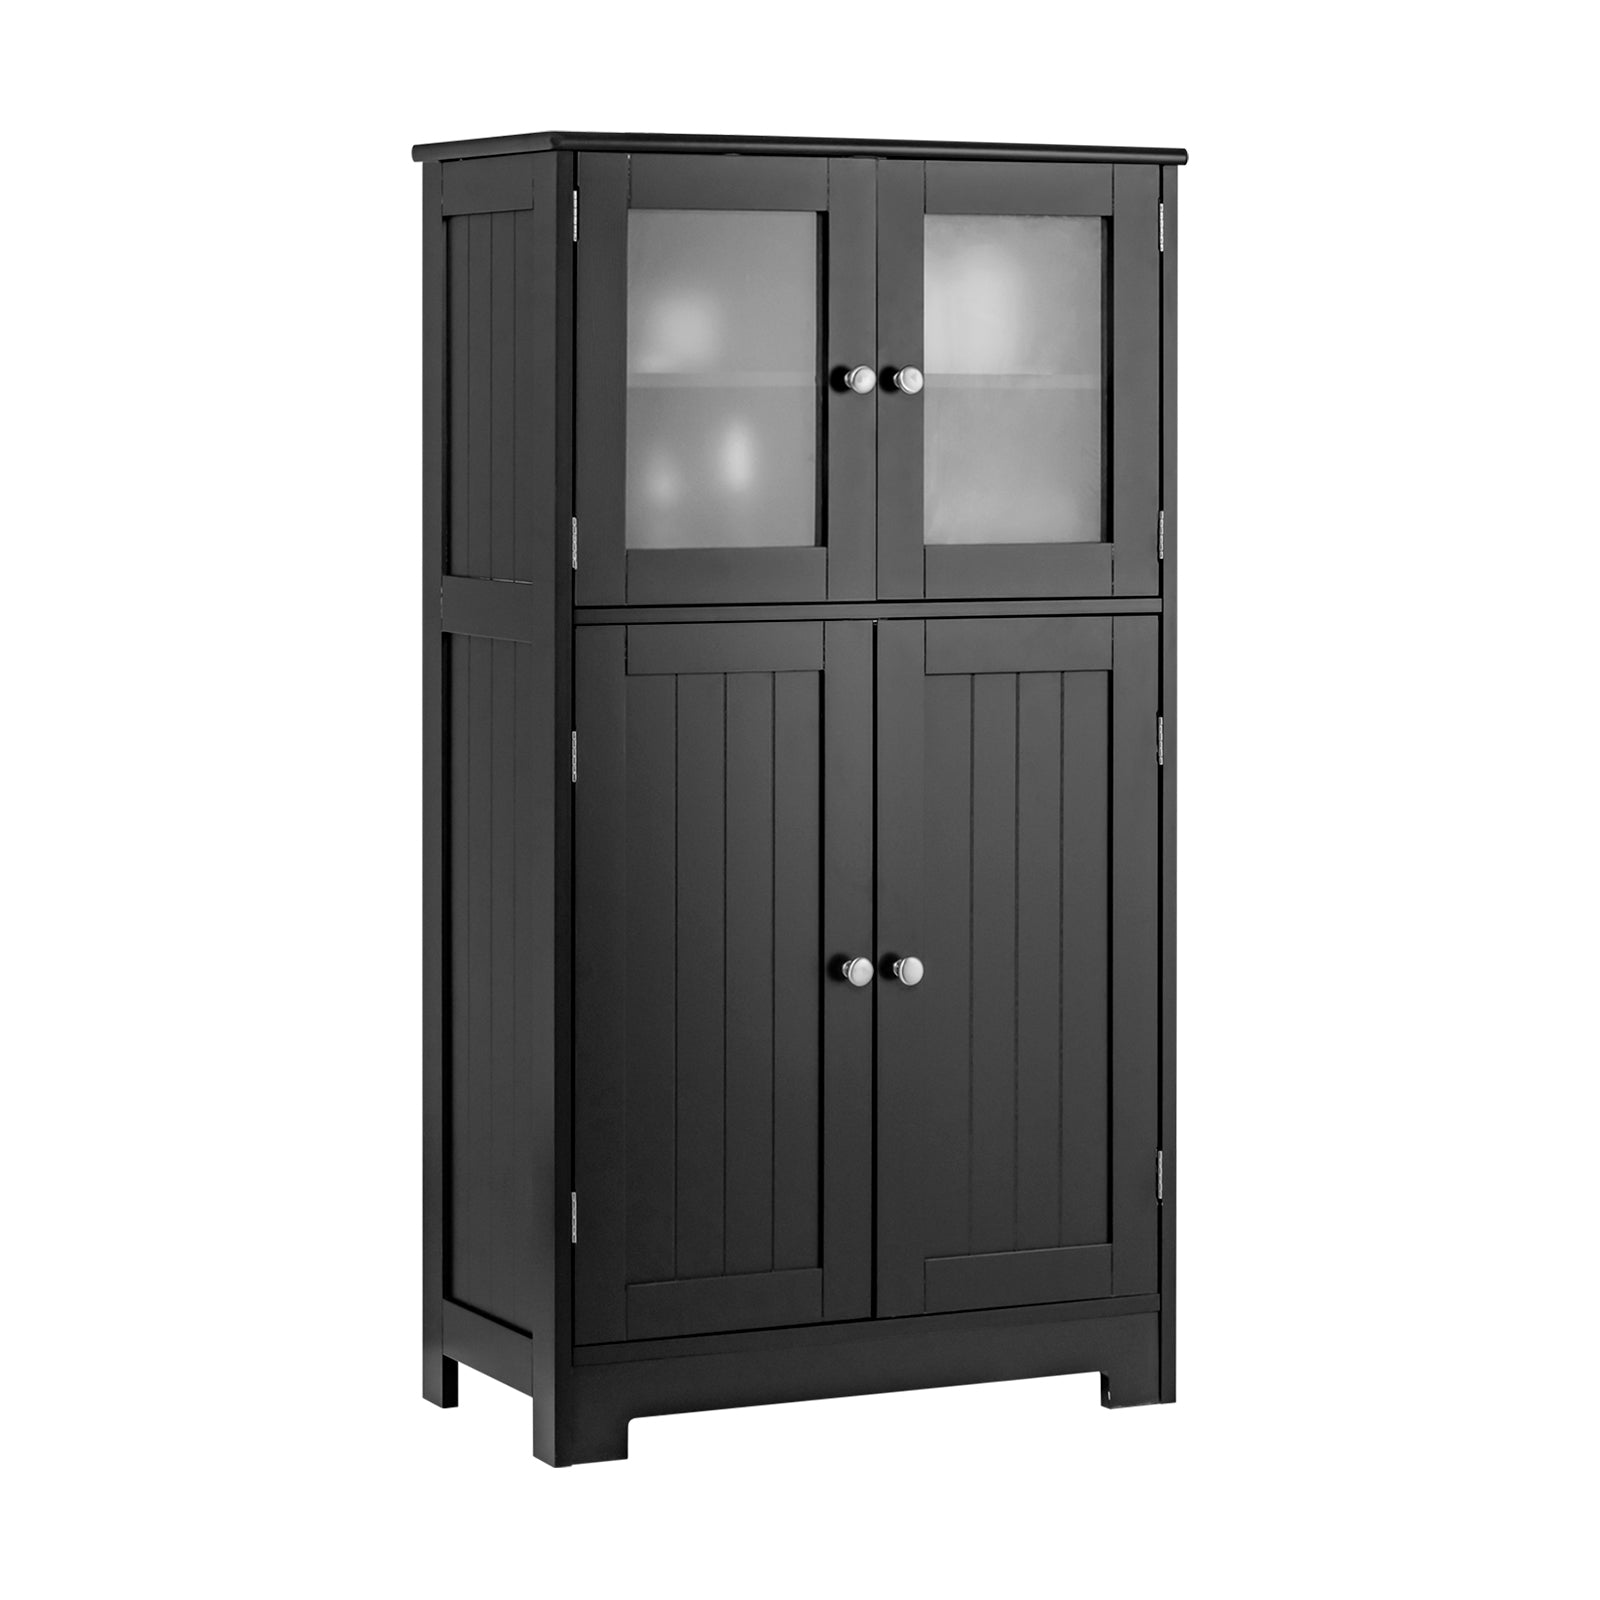 4-Door Bathroom Floor Cabinet with Glass Doors and Adjustable Shelf-Black